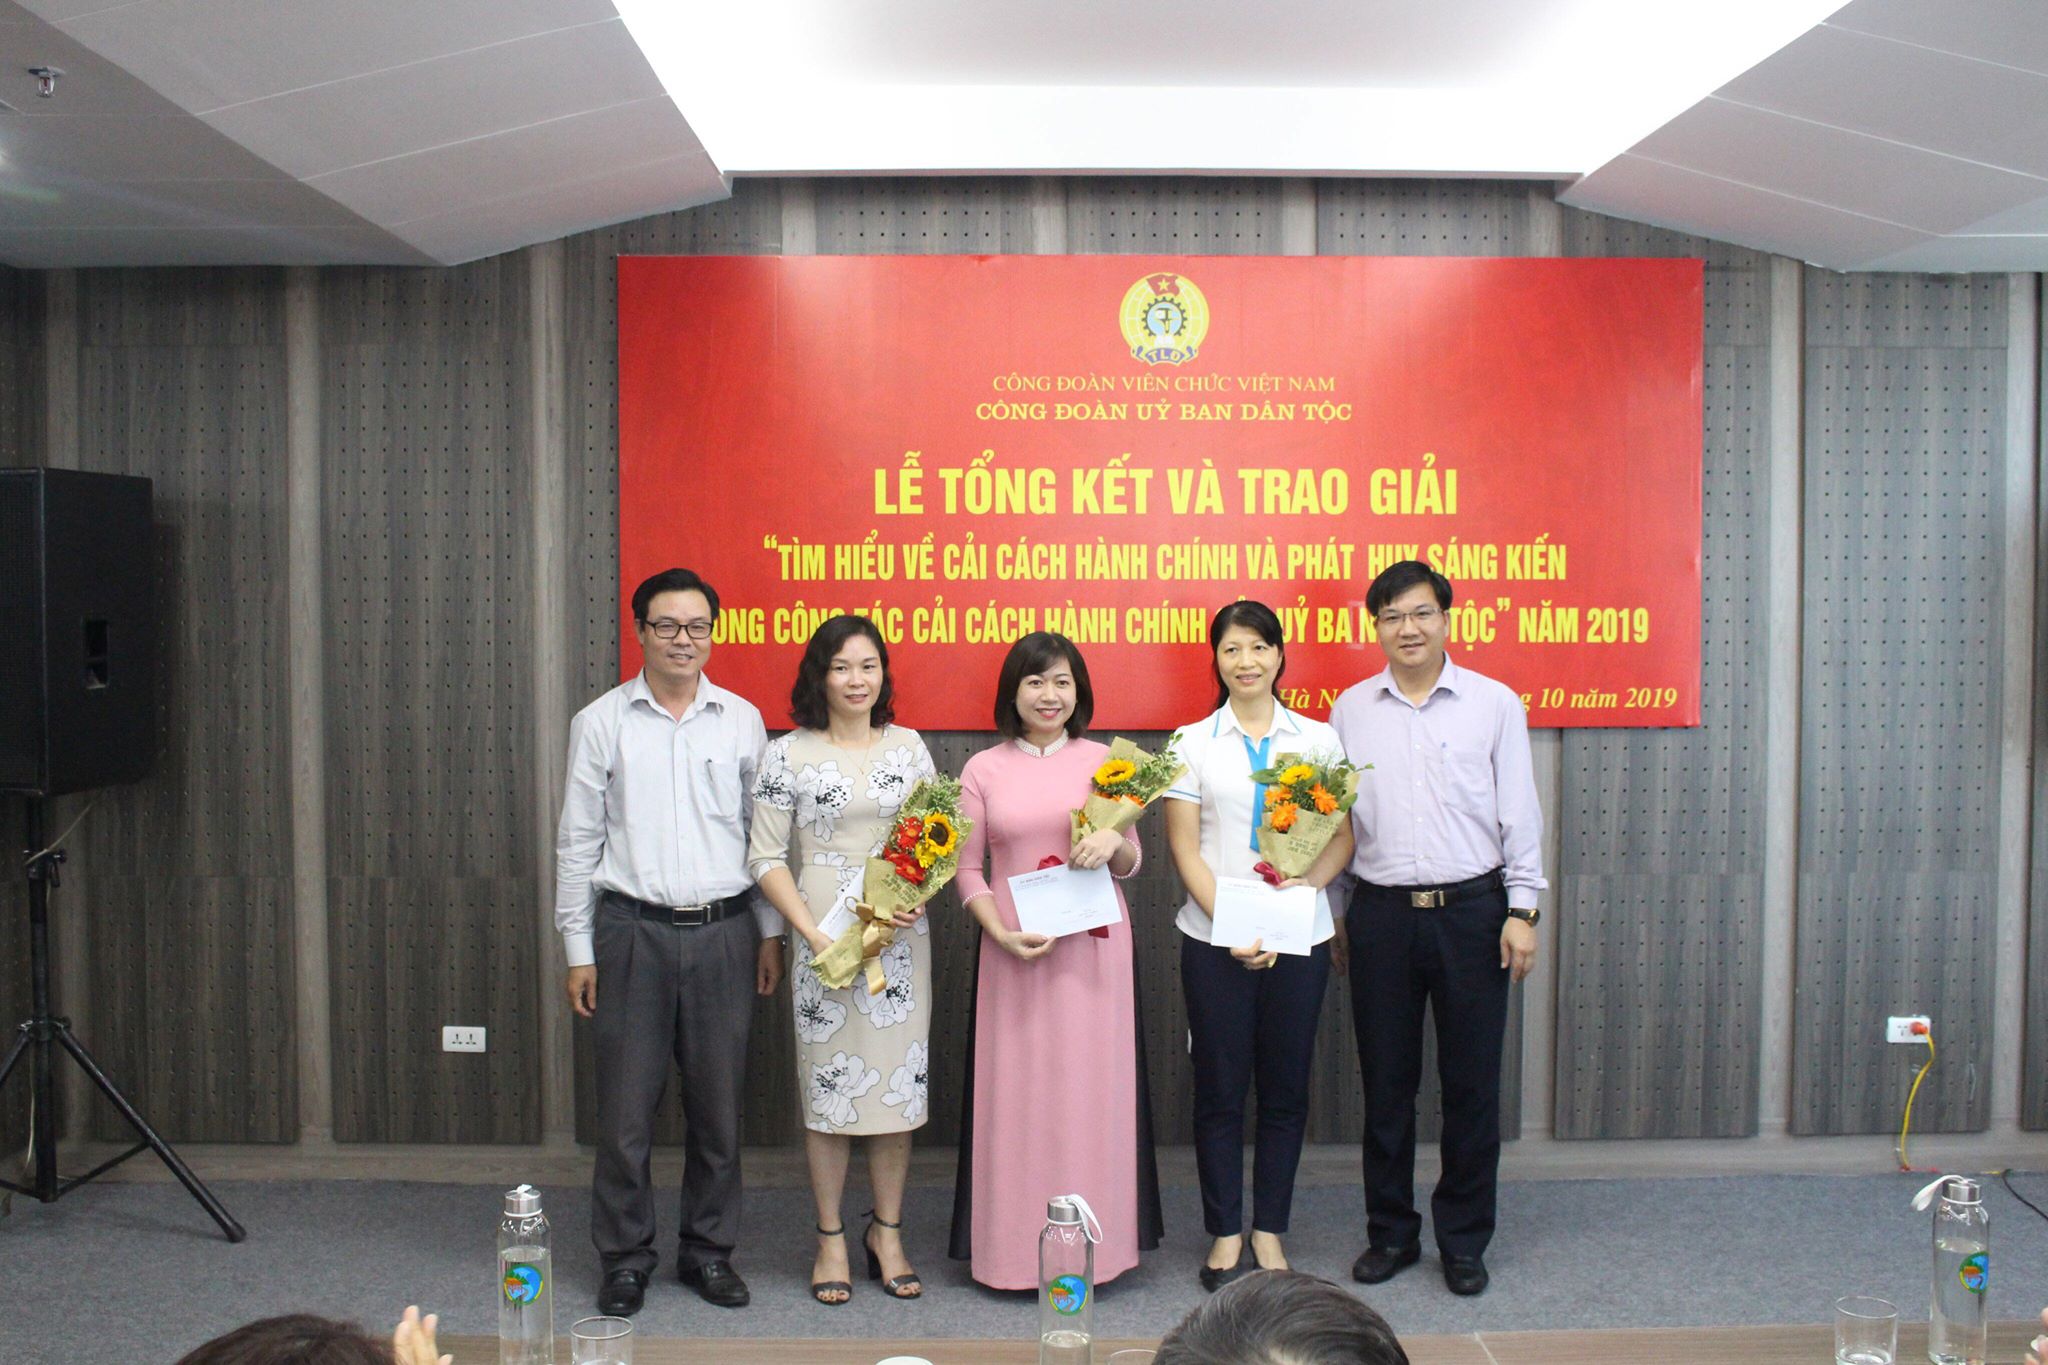 Ông Nguyễn Văn Phong, Phó Tổng biên tập Báo Dân tộc và Phát triển trao giải cho các cá nhân đạt giải trong cuộc thi CCHC của UBDT năm 2019